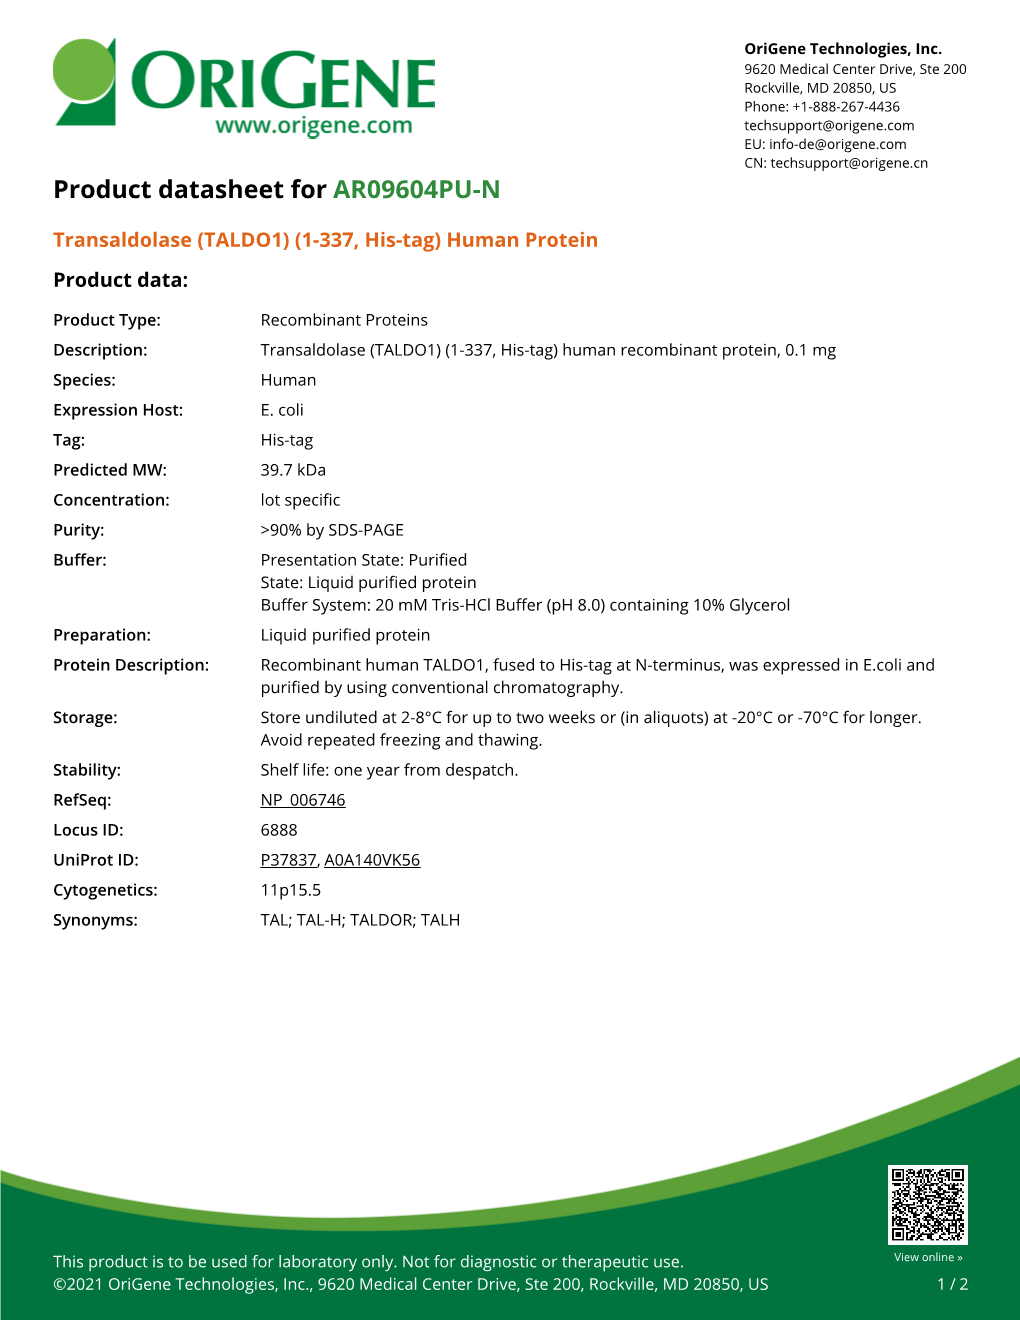 Transaldolase (TALDO1) (1-337, His-Tag) Human Protein Product Data